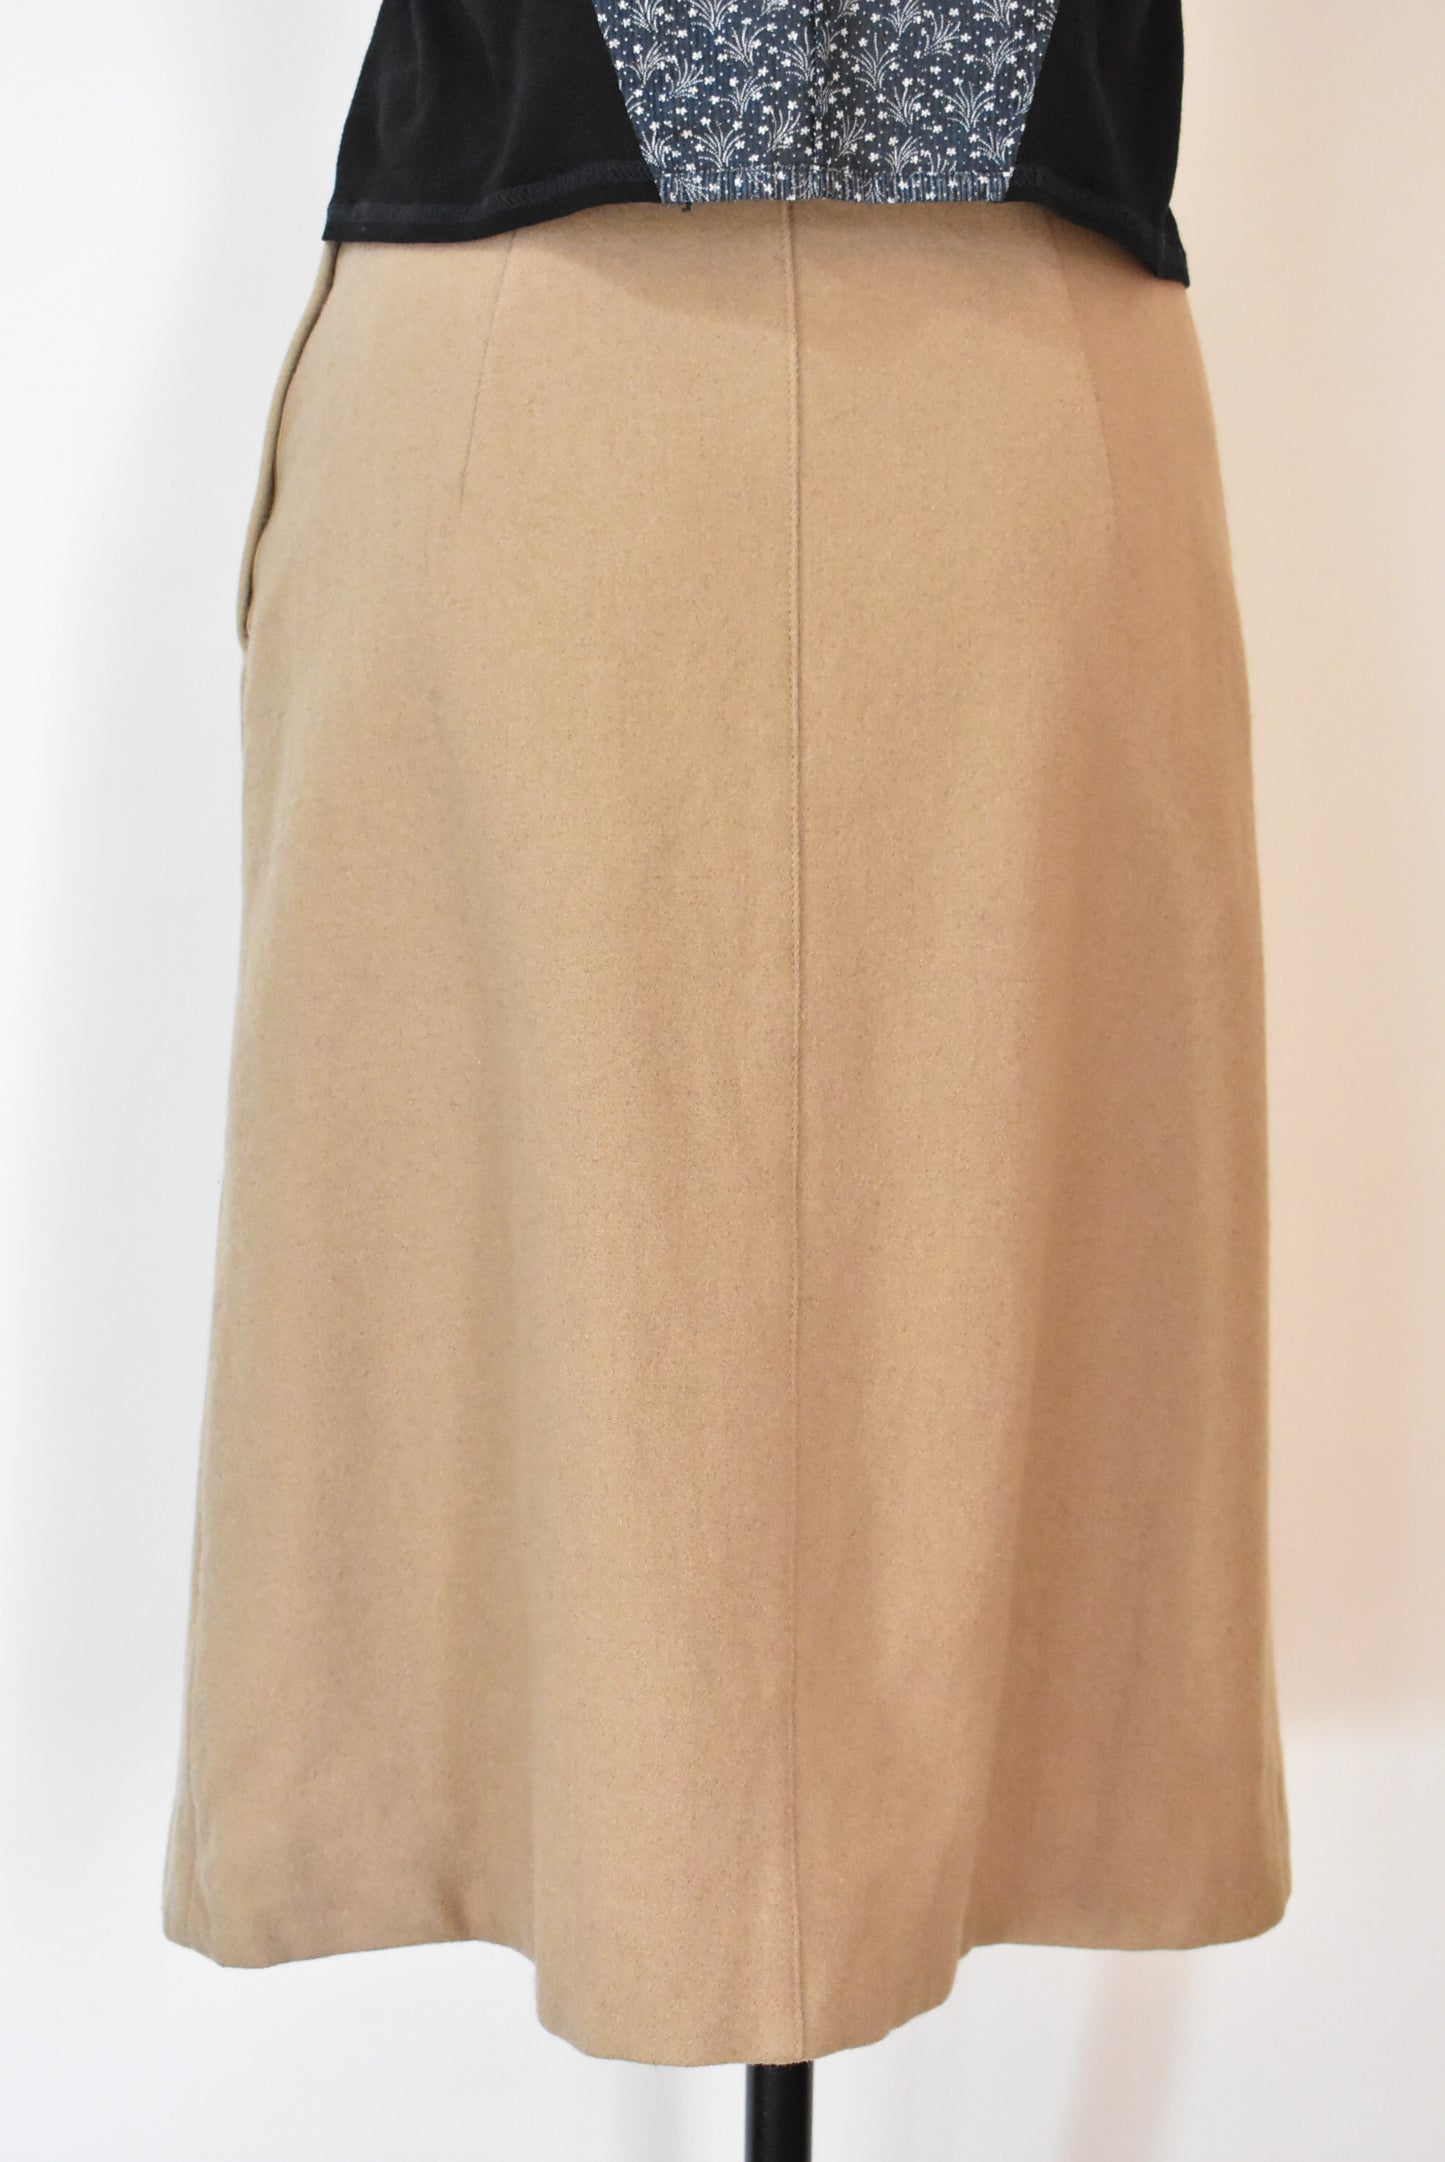 Dereta vintage skirt, 12